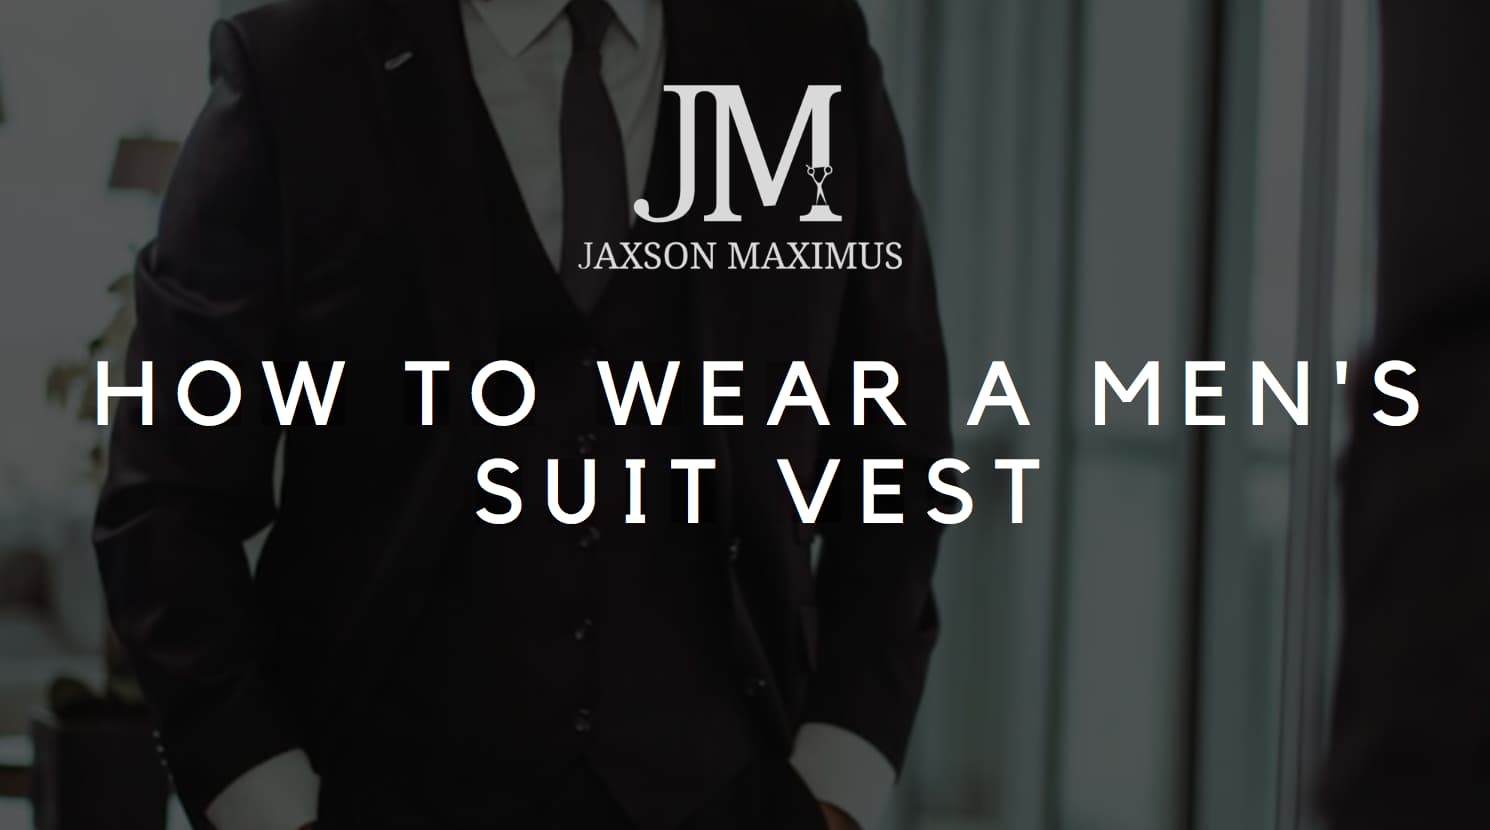 How To Wear A Men's Suit Vest